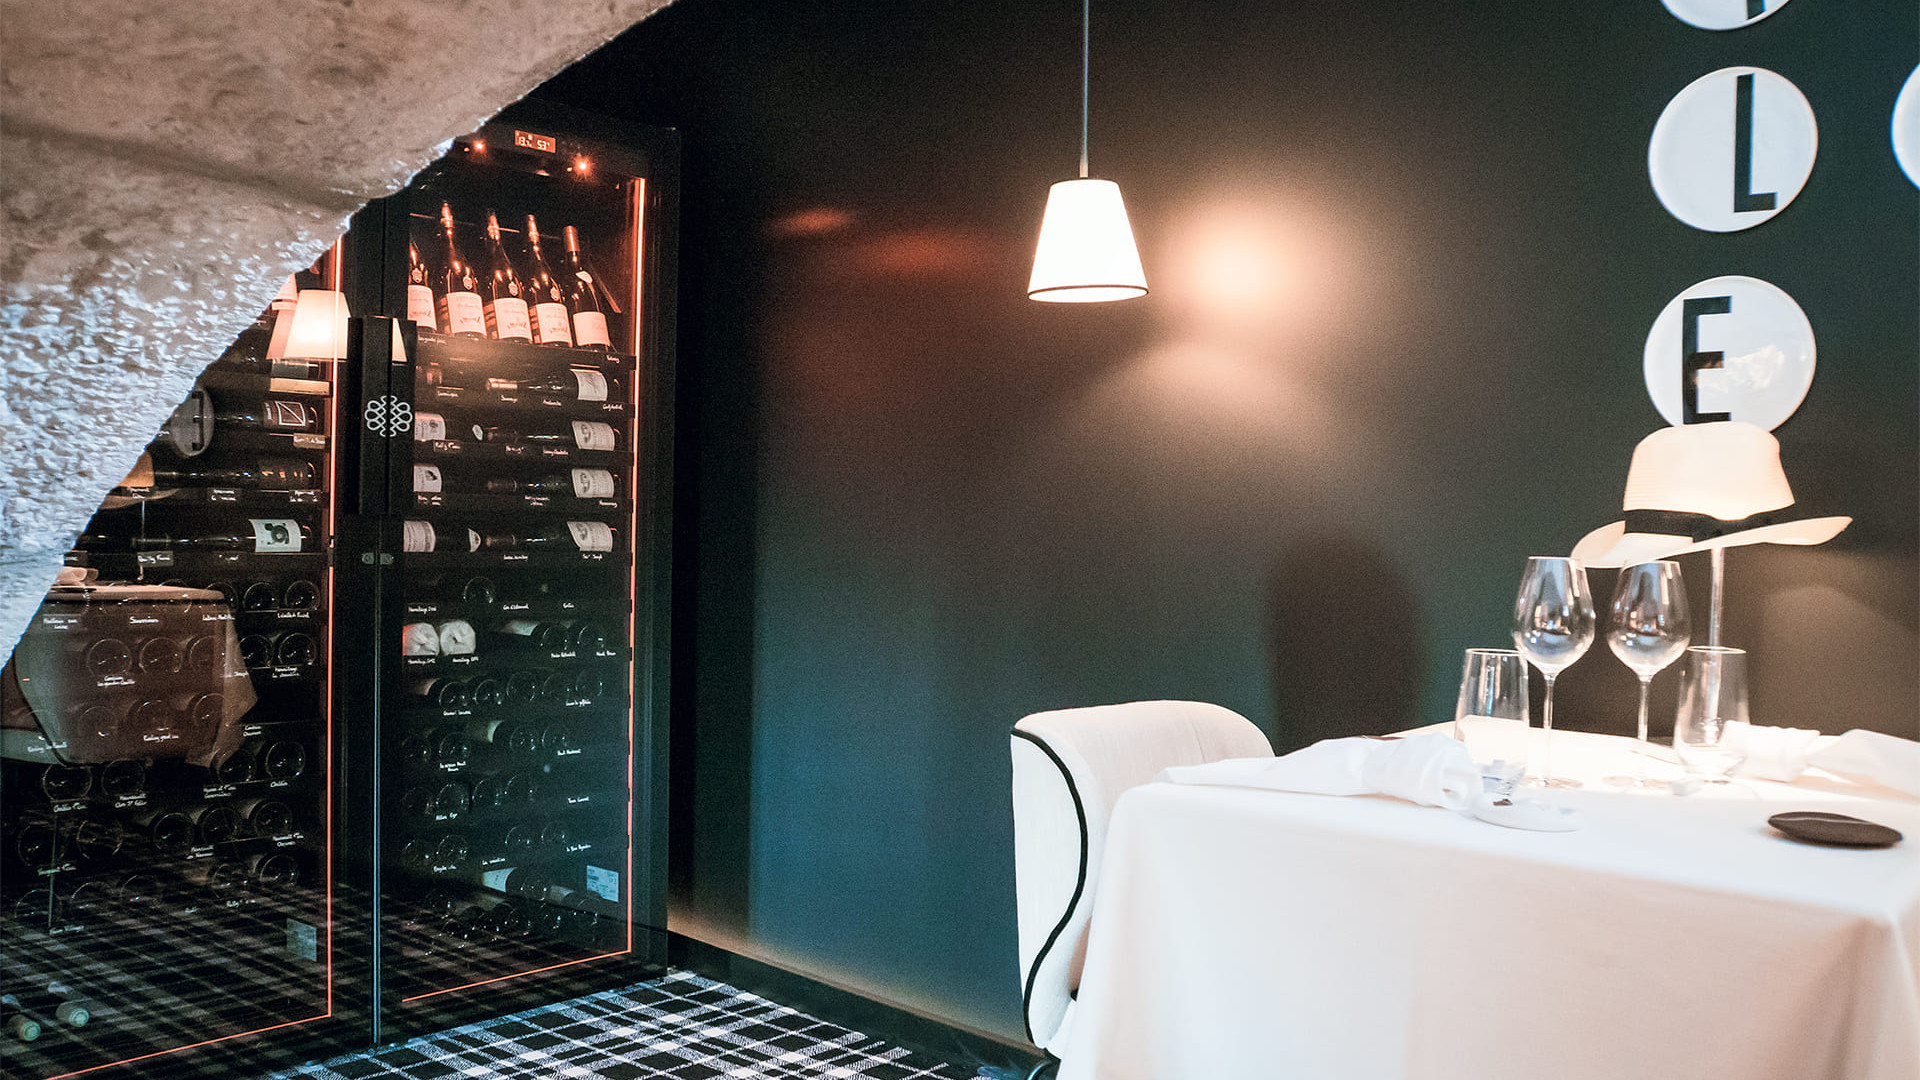 Wunderschöne Installation von 2 Weinkellern in einer Nische mit gewölbtem Steintürrahmen. Perfekte Integration in einen romantischen Essbereich. Revelation EuroCave